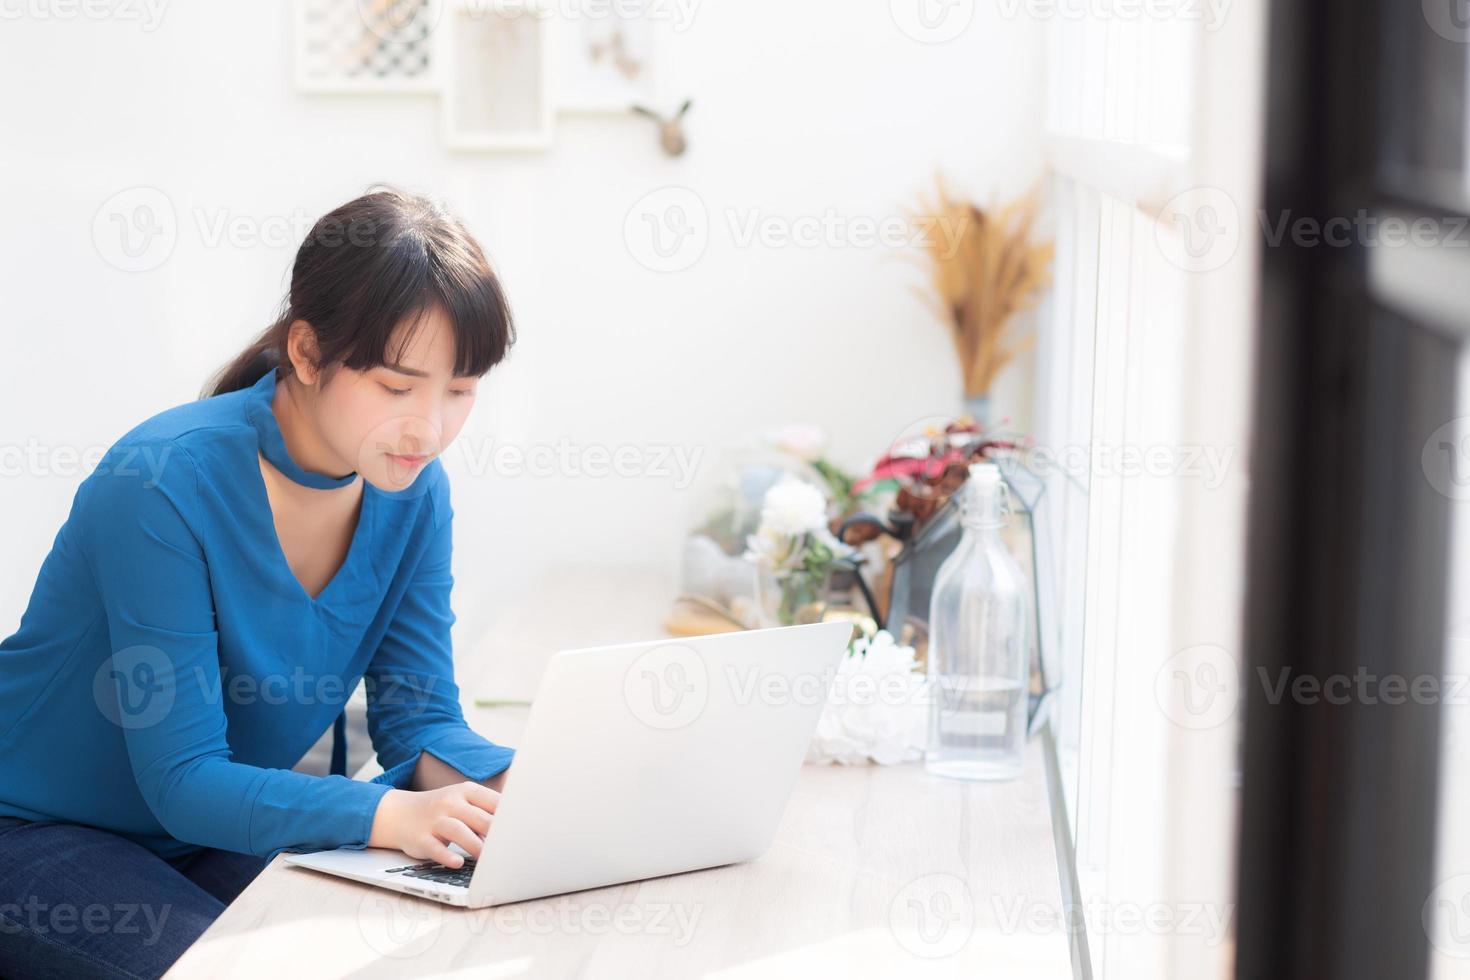 vackert porträtt asien ung kvinna som arbetar online på bärbar dator sitter på café butik, professionell kvinnlig frilans med bärbar dator, affärs- och kommunikationskoncept. foto